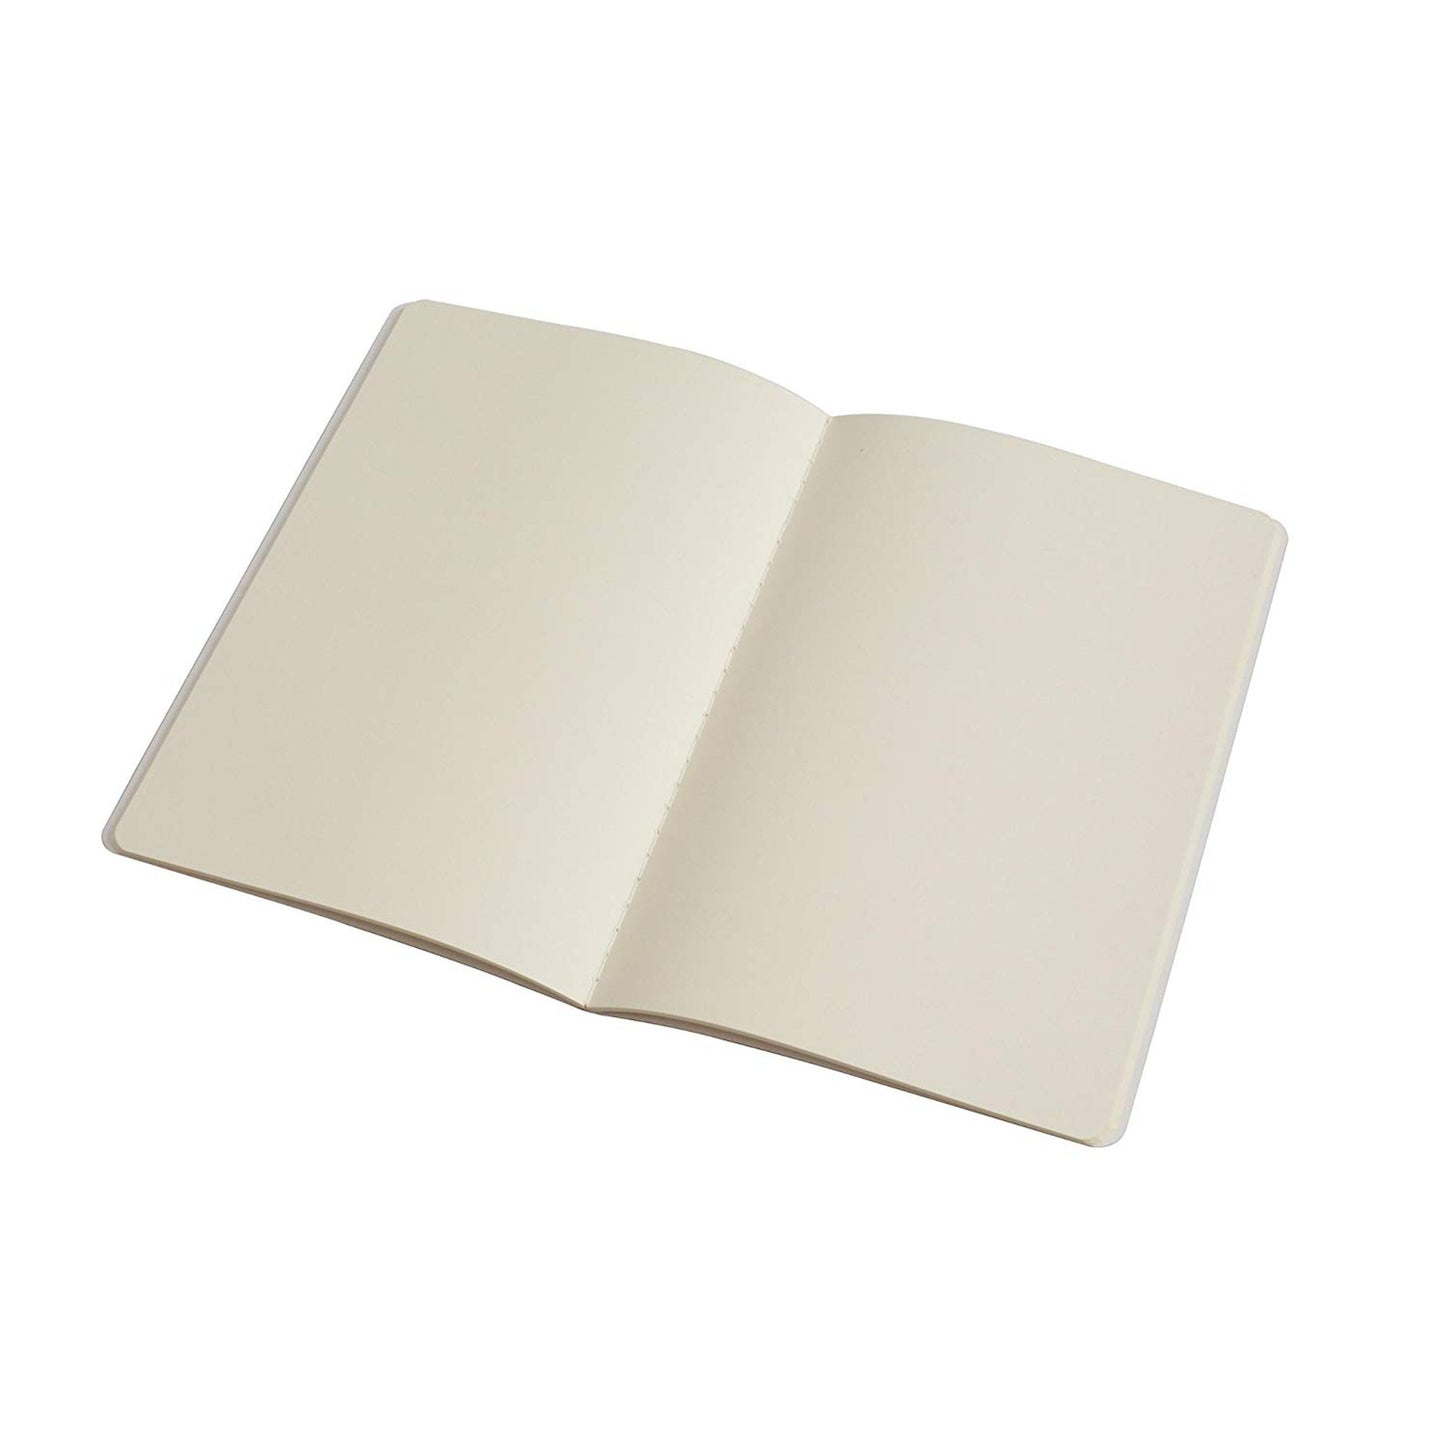 PinkPolish Design Notebook "Floral Carpet" Nature Inspired Notebook / Sketchbook / Journal